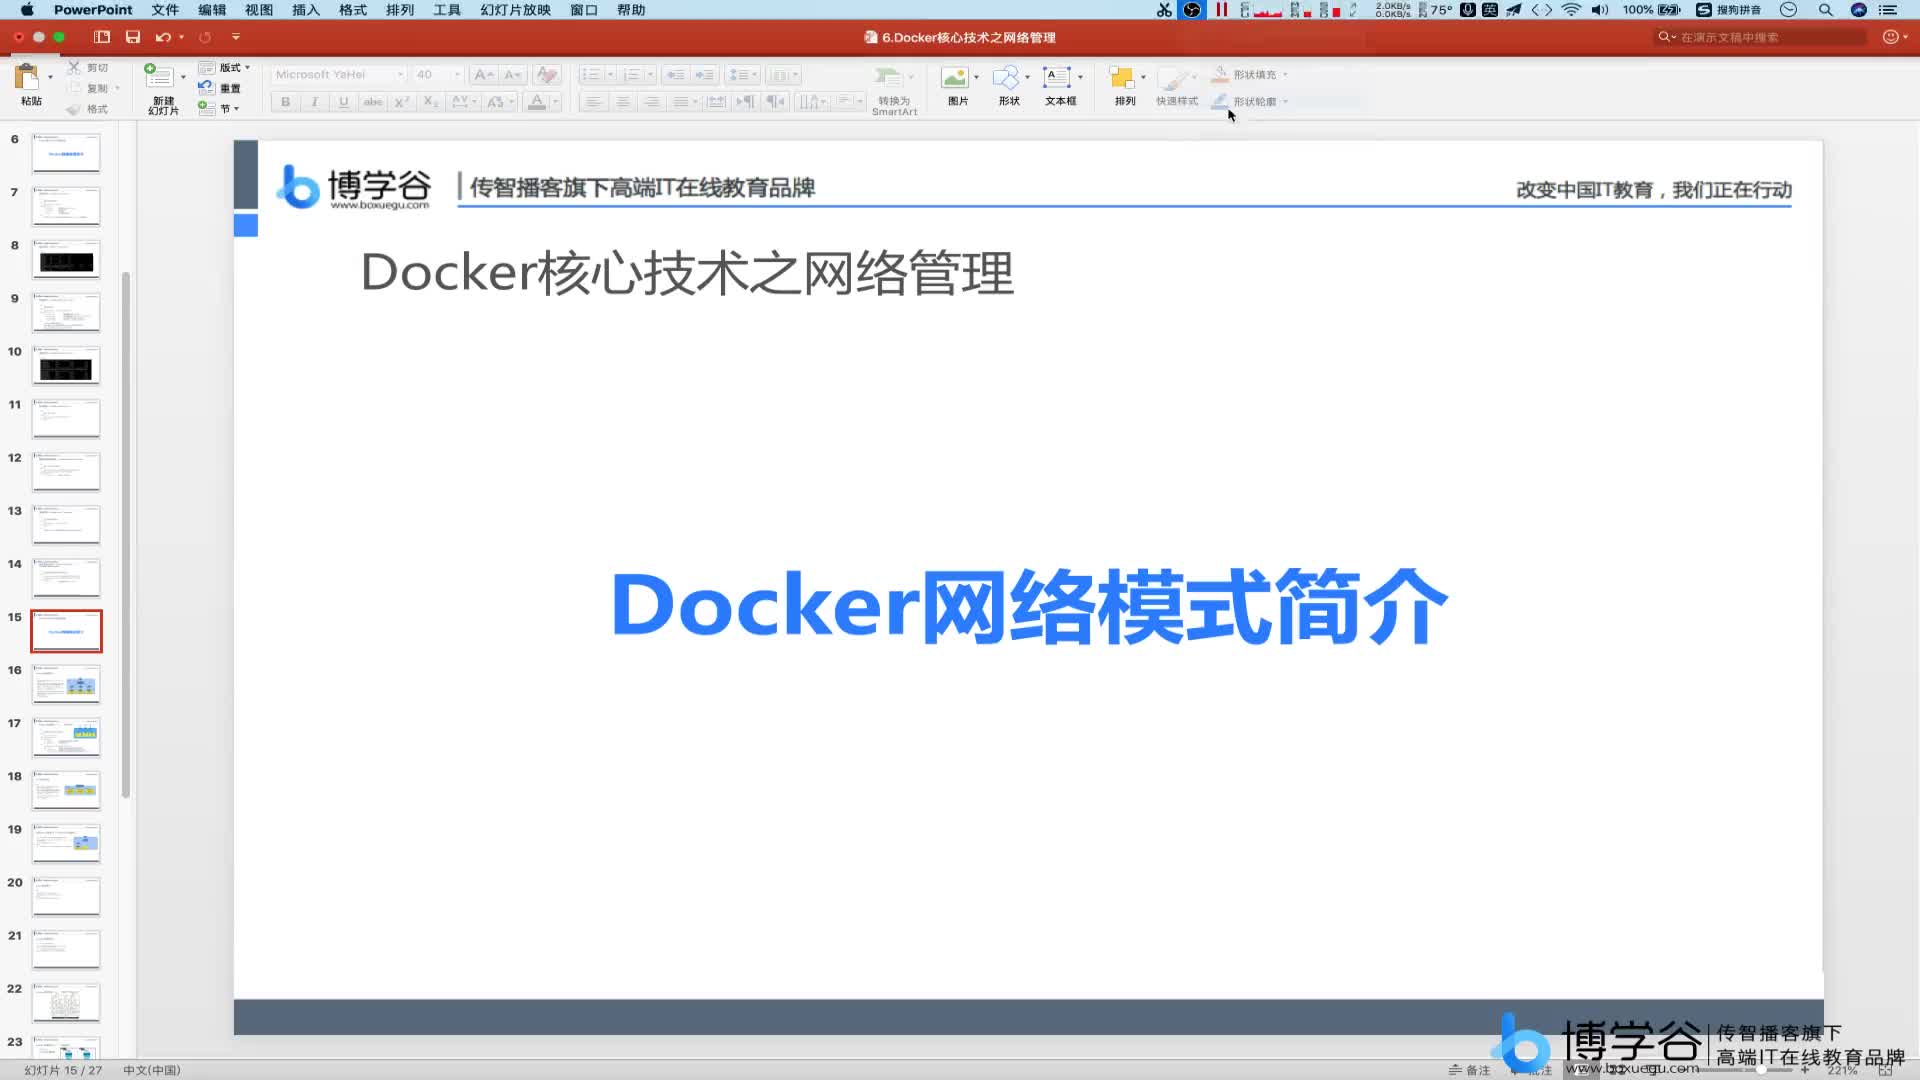 9.Docker网络模式之网络模式简介